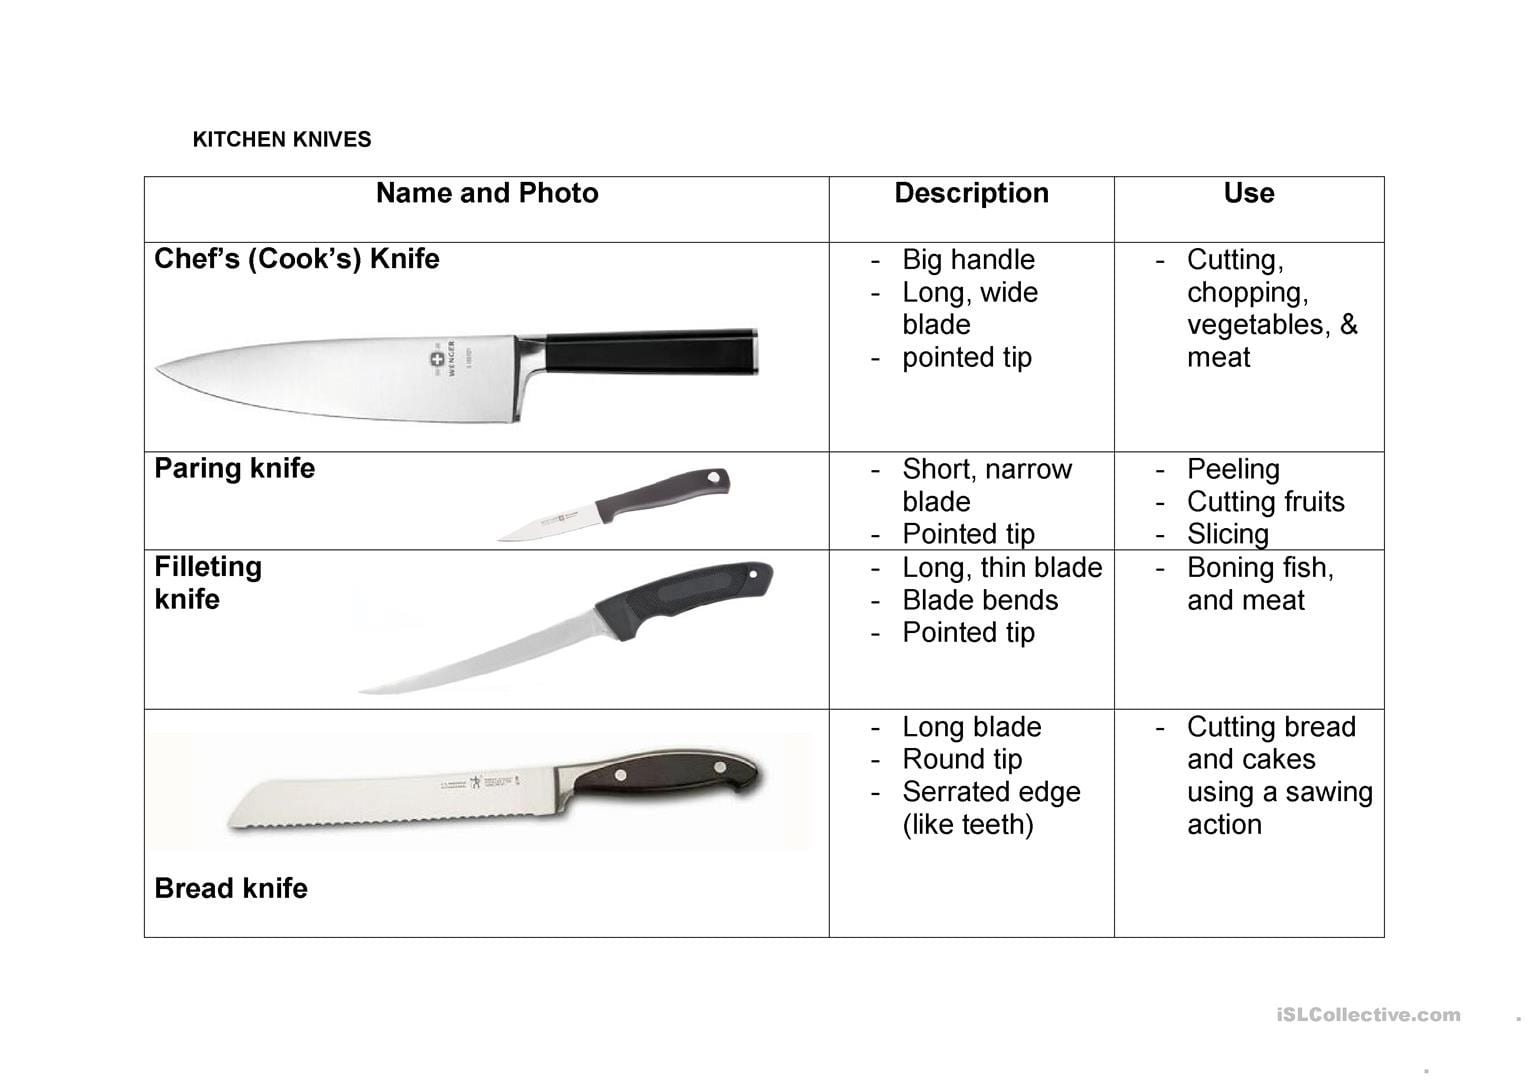 Нож перевод на русский. Кухонные ножи инфографика. Нож кухонный гастрономический. Виды кулинарных ножей. Нож по английскому.